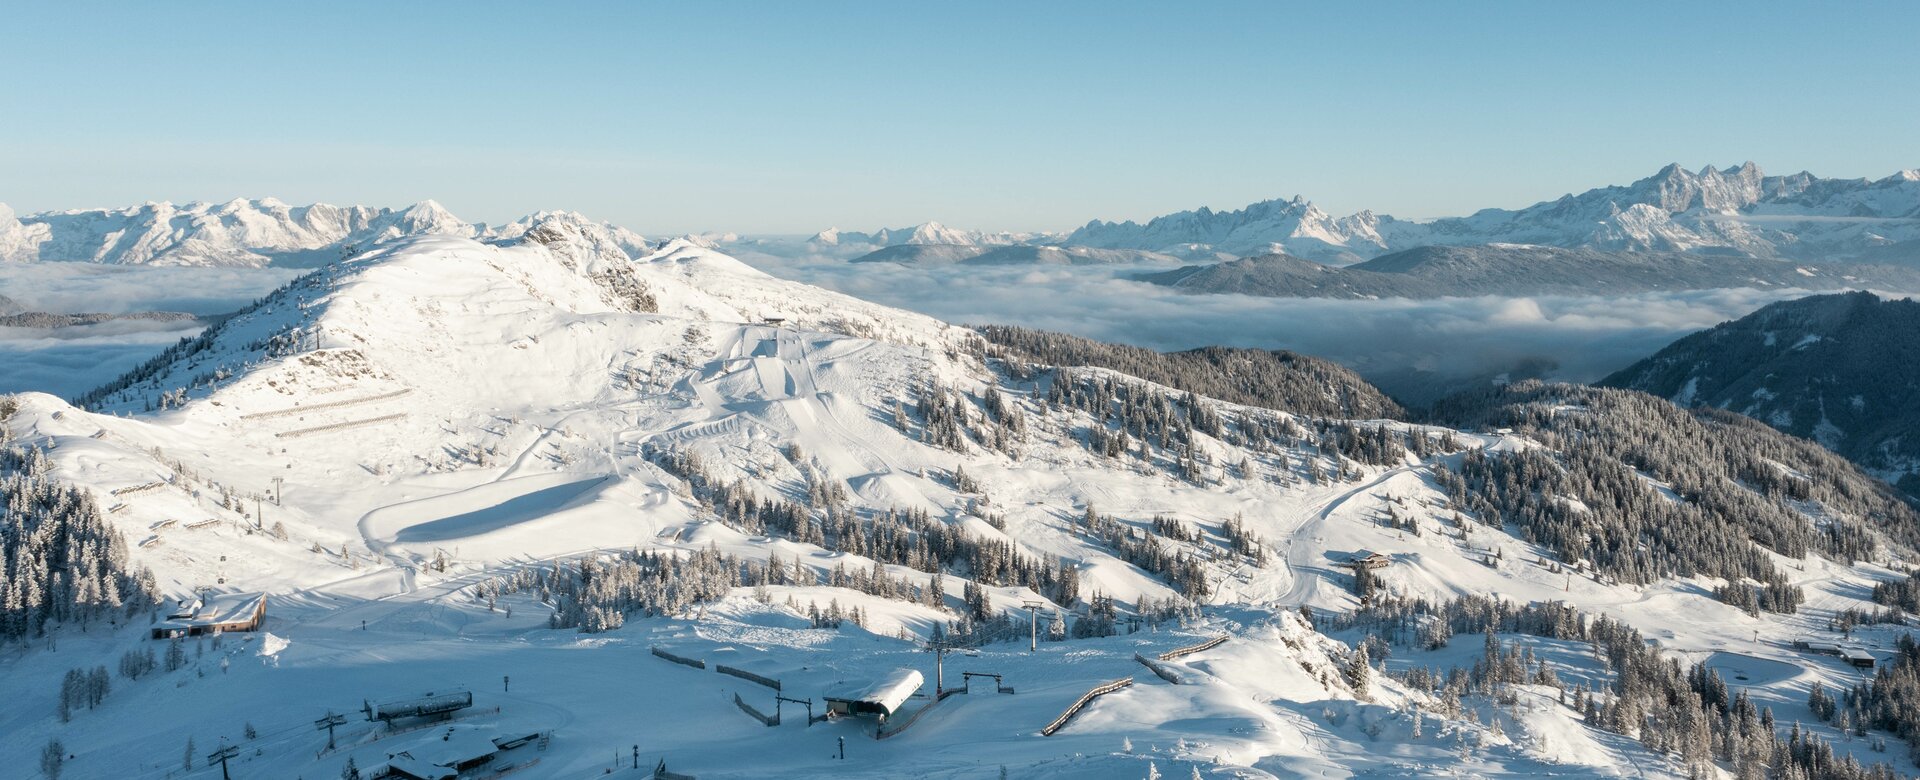 verschneites Skigebiet von oben mit diversen Liften und Pisten | © Shuttleberg GmbH & Co KG